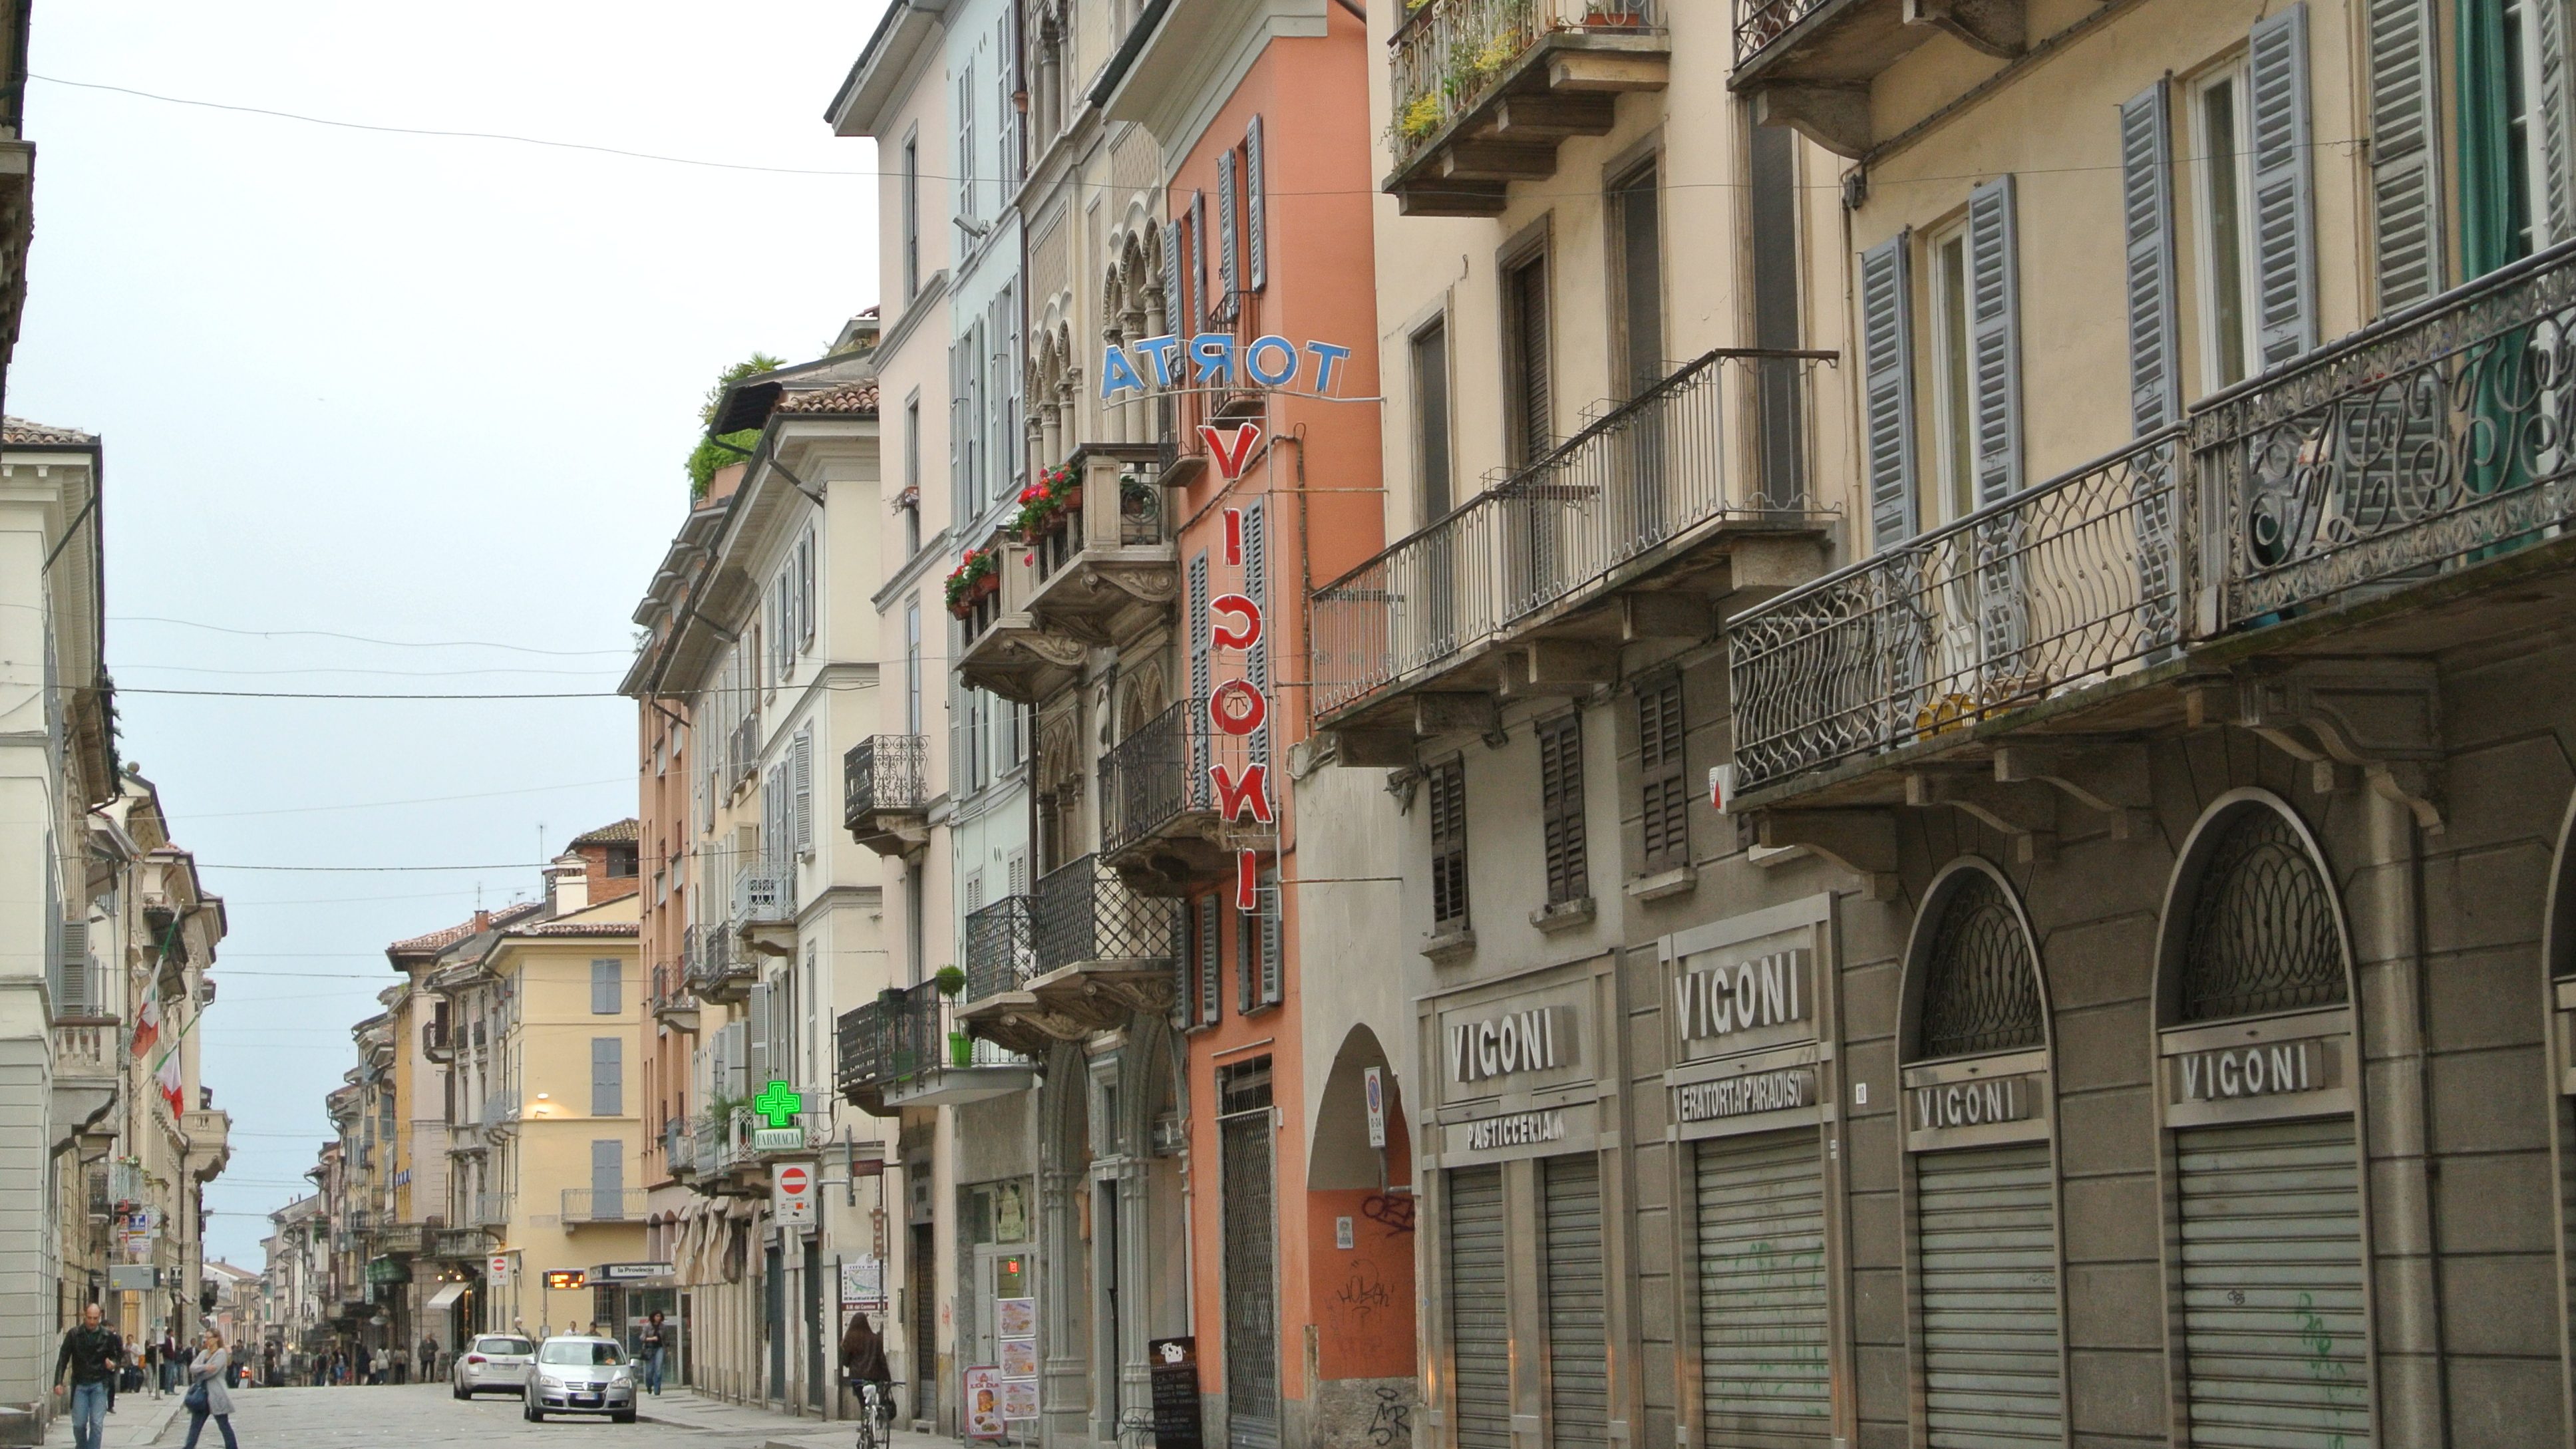 Strada Nuova, the main street in Pavia, Italy